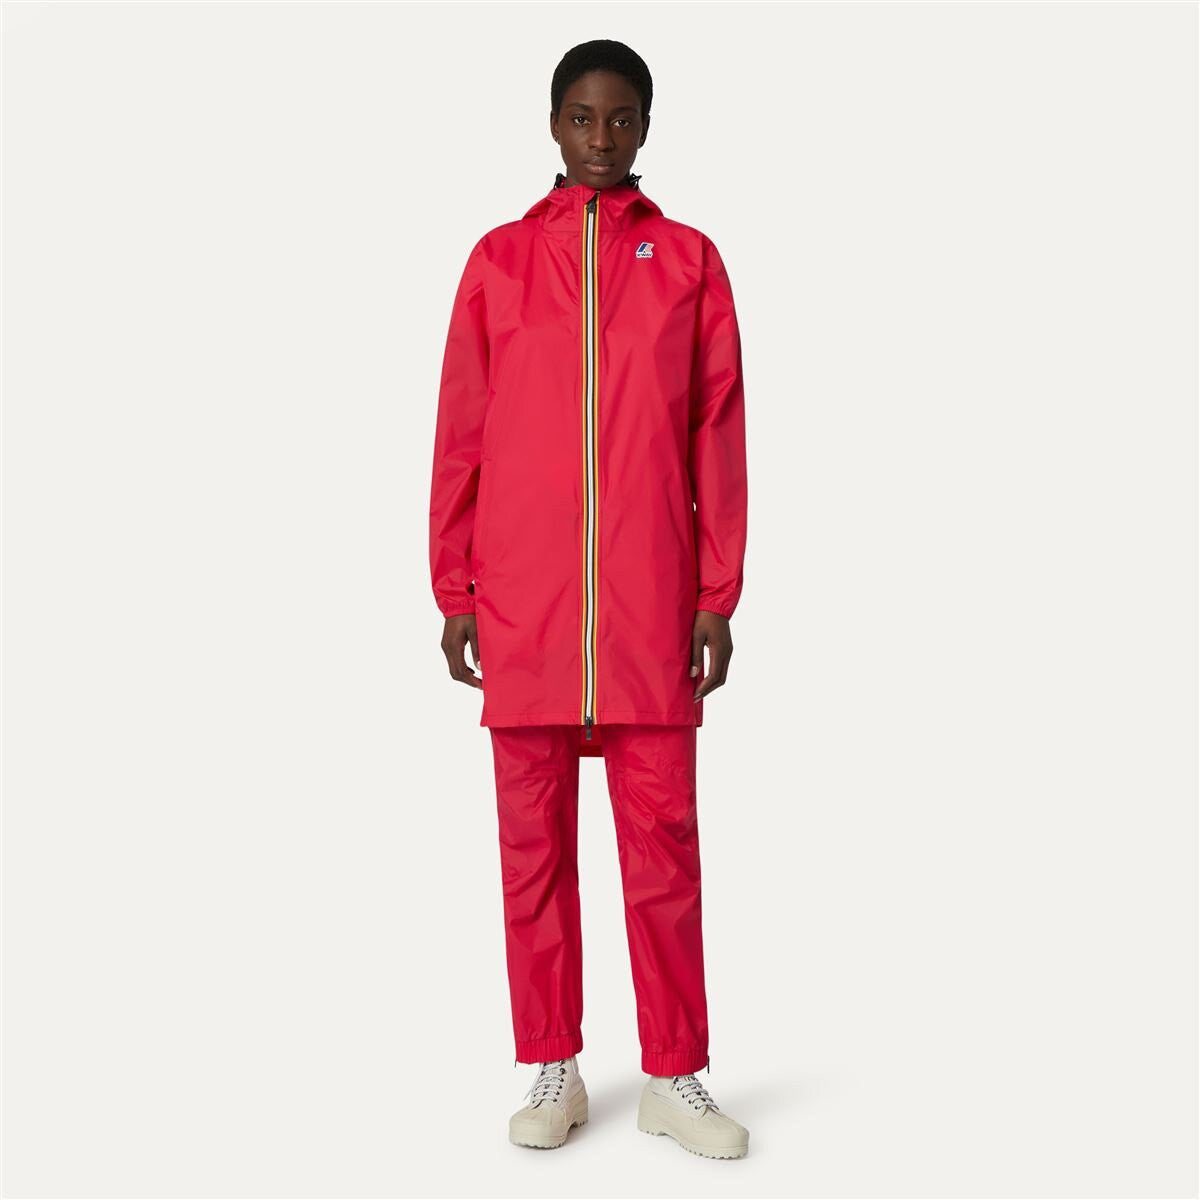 Eiffel - Unisex Waterproof Packable Long Rain Jacket in Red